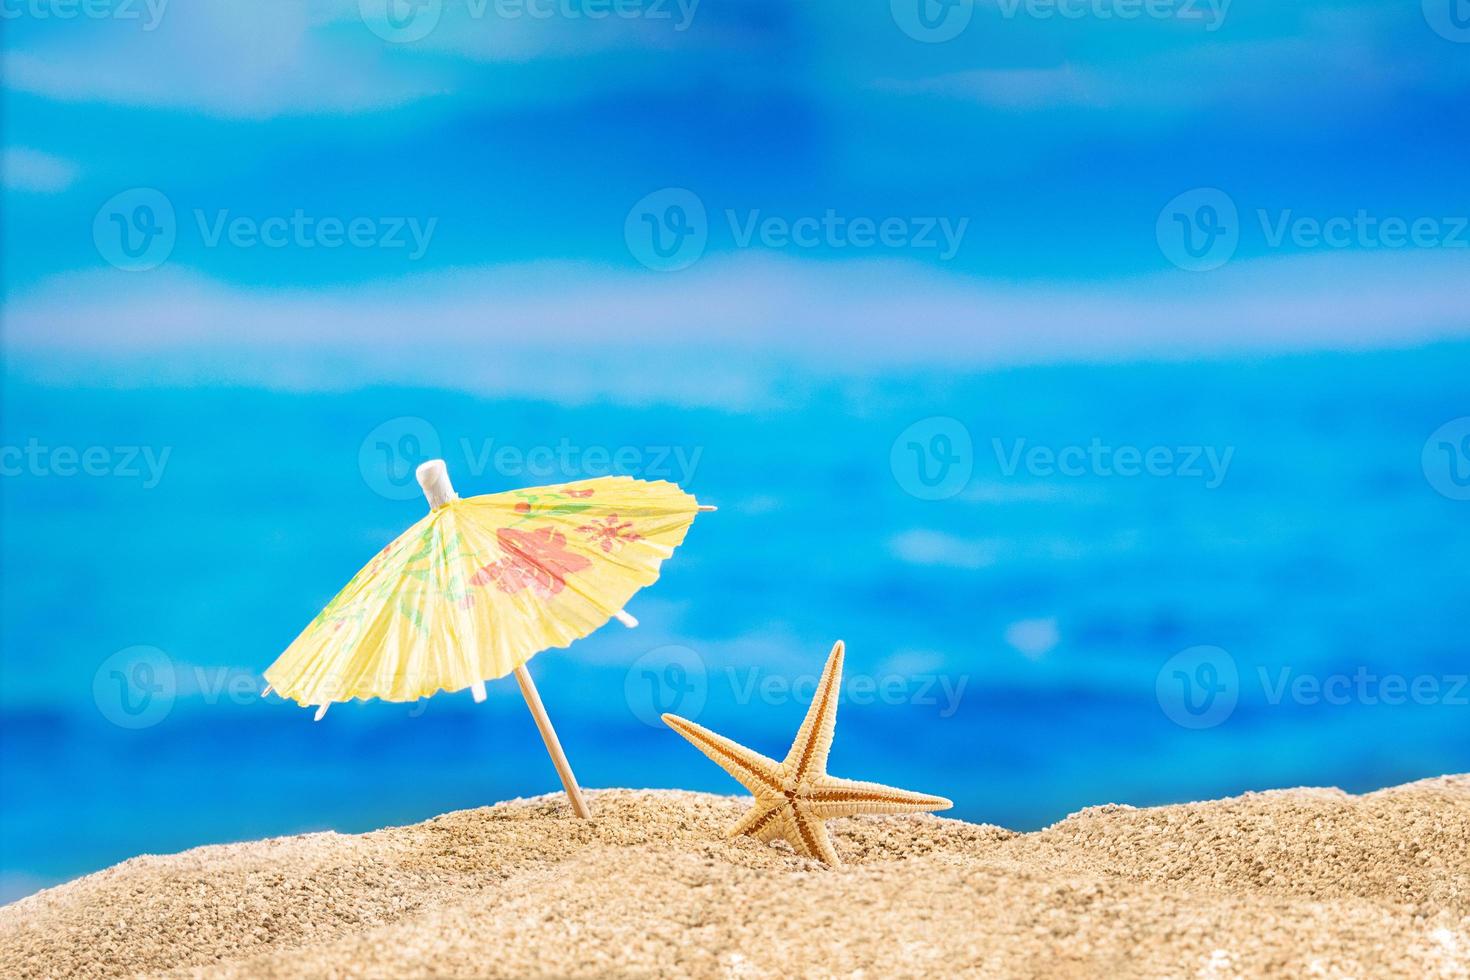 étoile de mer sur la plage sur le sable avec parasol. mer. concept de loisirs, tourisme. copie espace photo